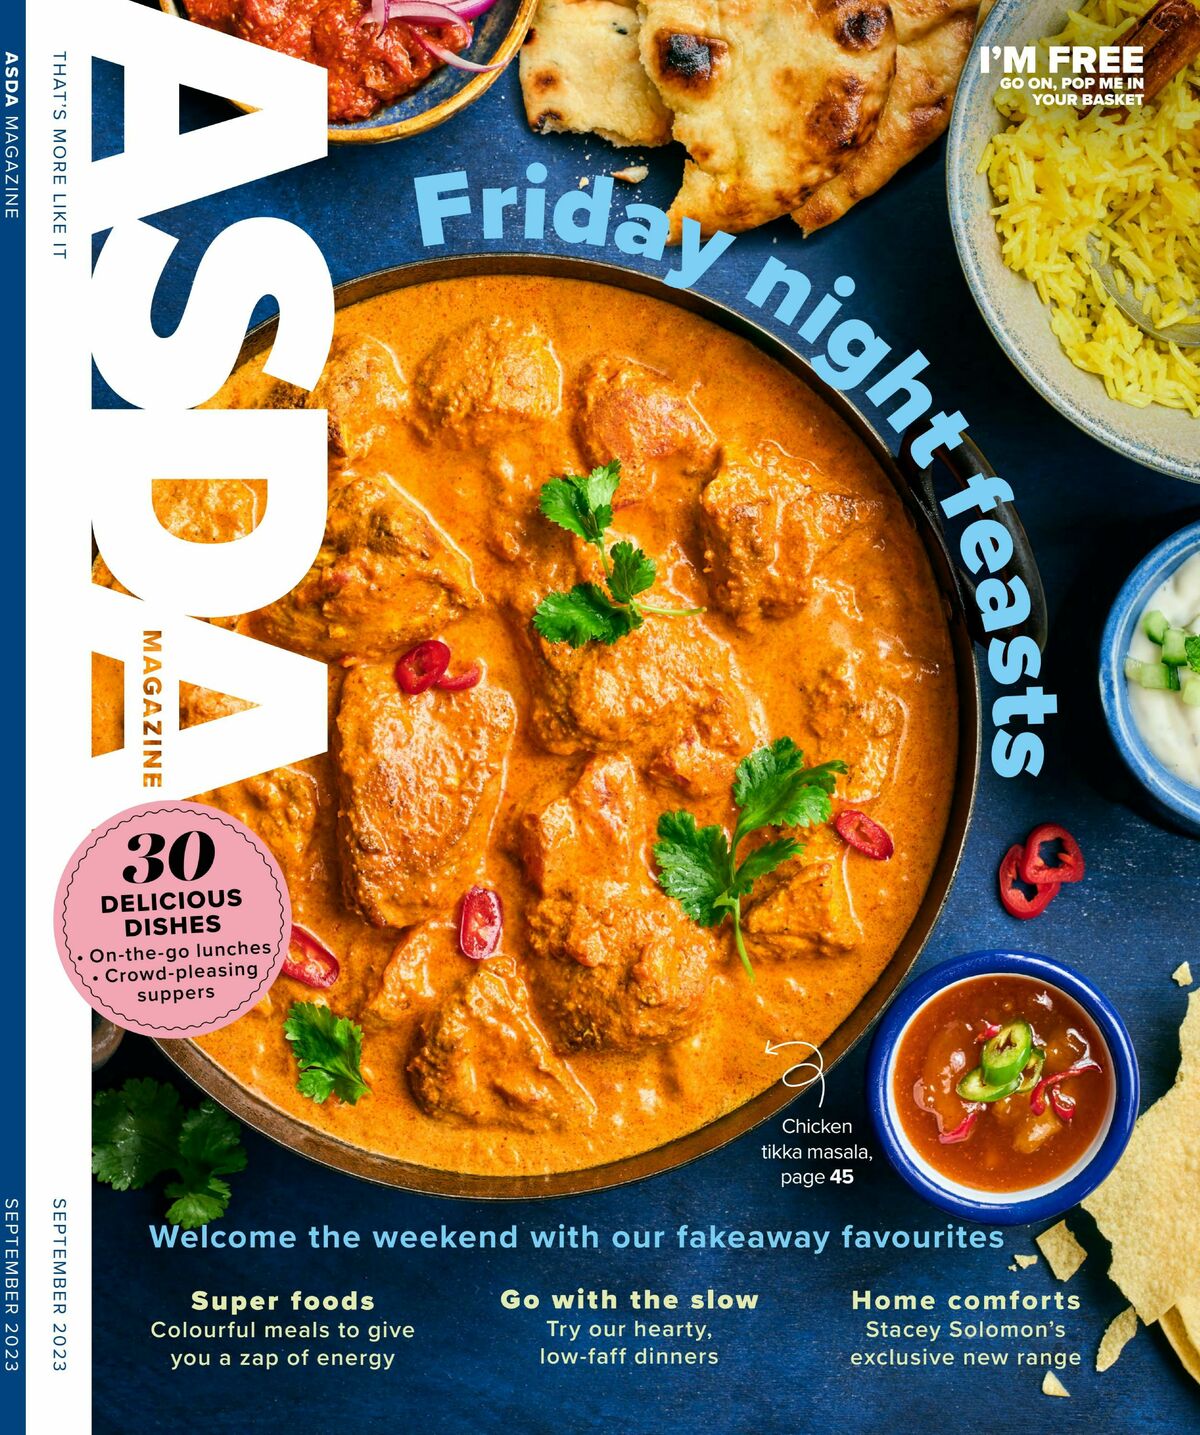 ASDA Magazine September Offers from 5 September